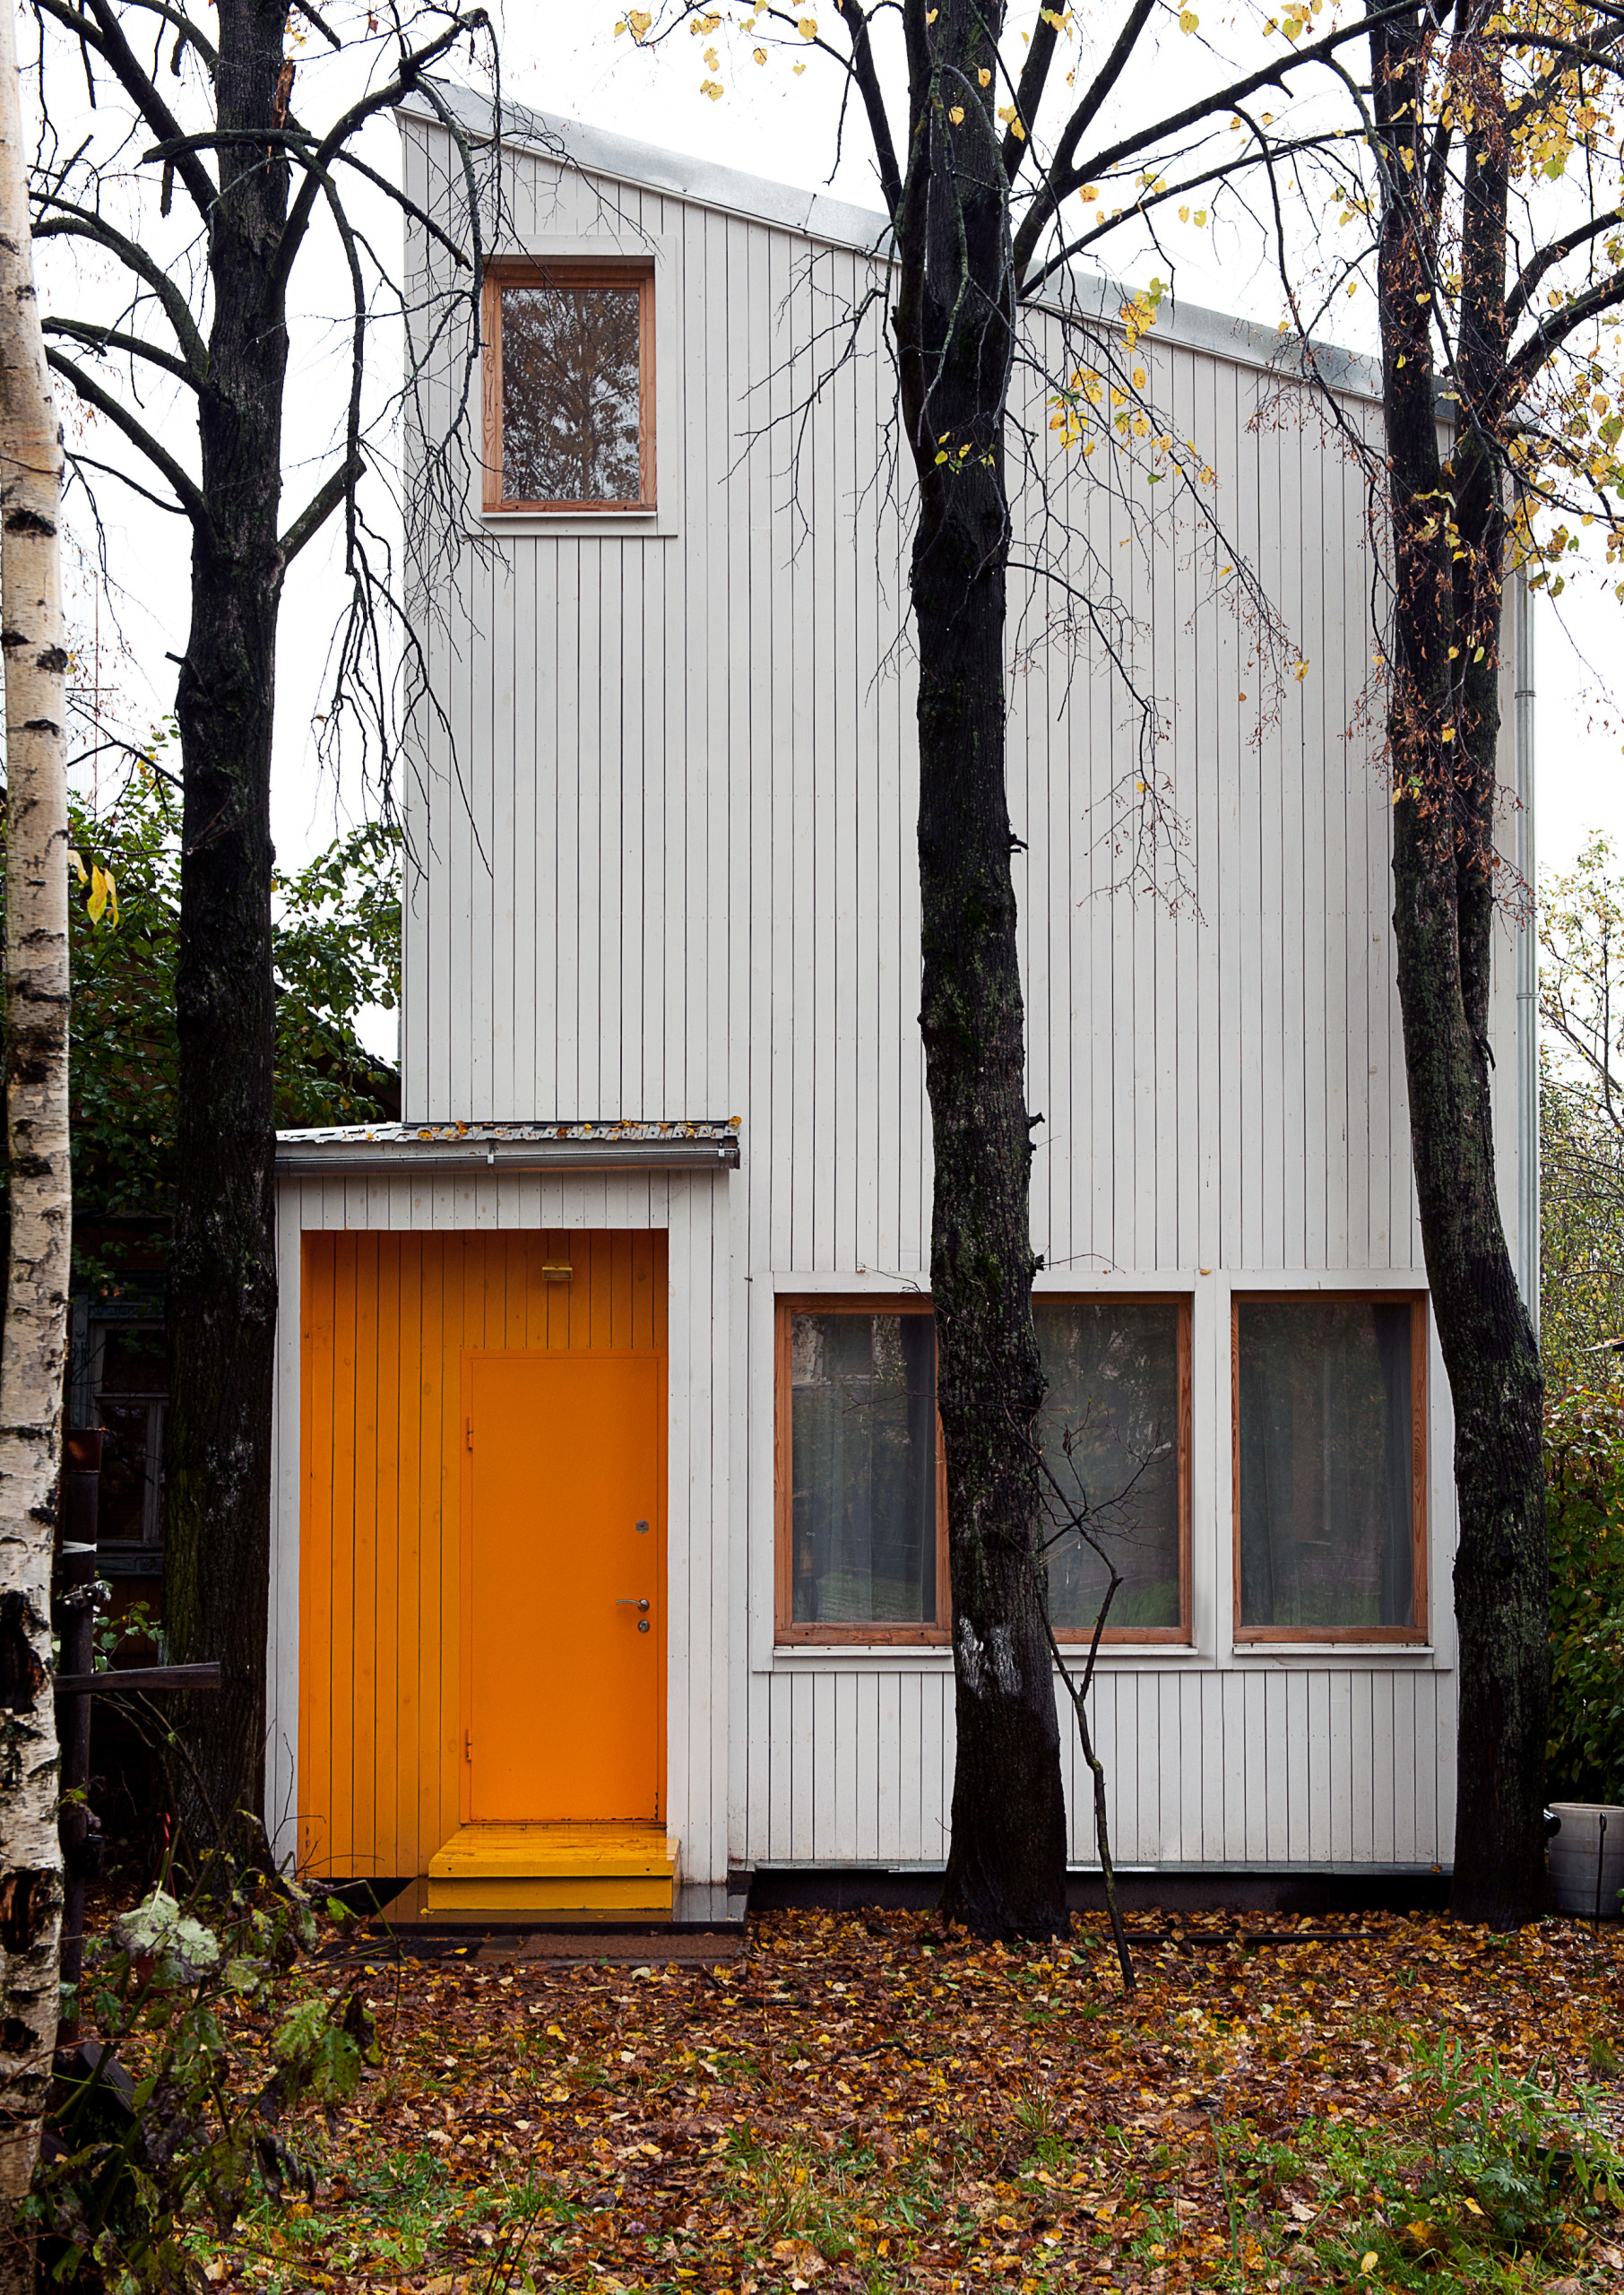 Как выглядят дома в знаменитом поселке художников «Сокол» в Москве